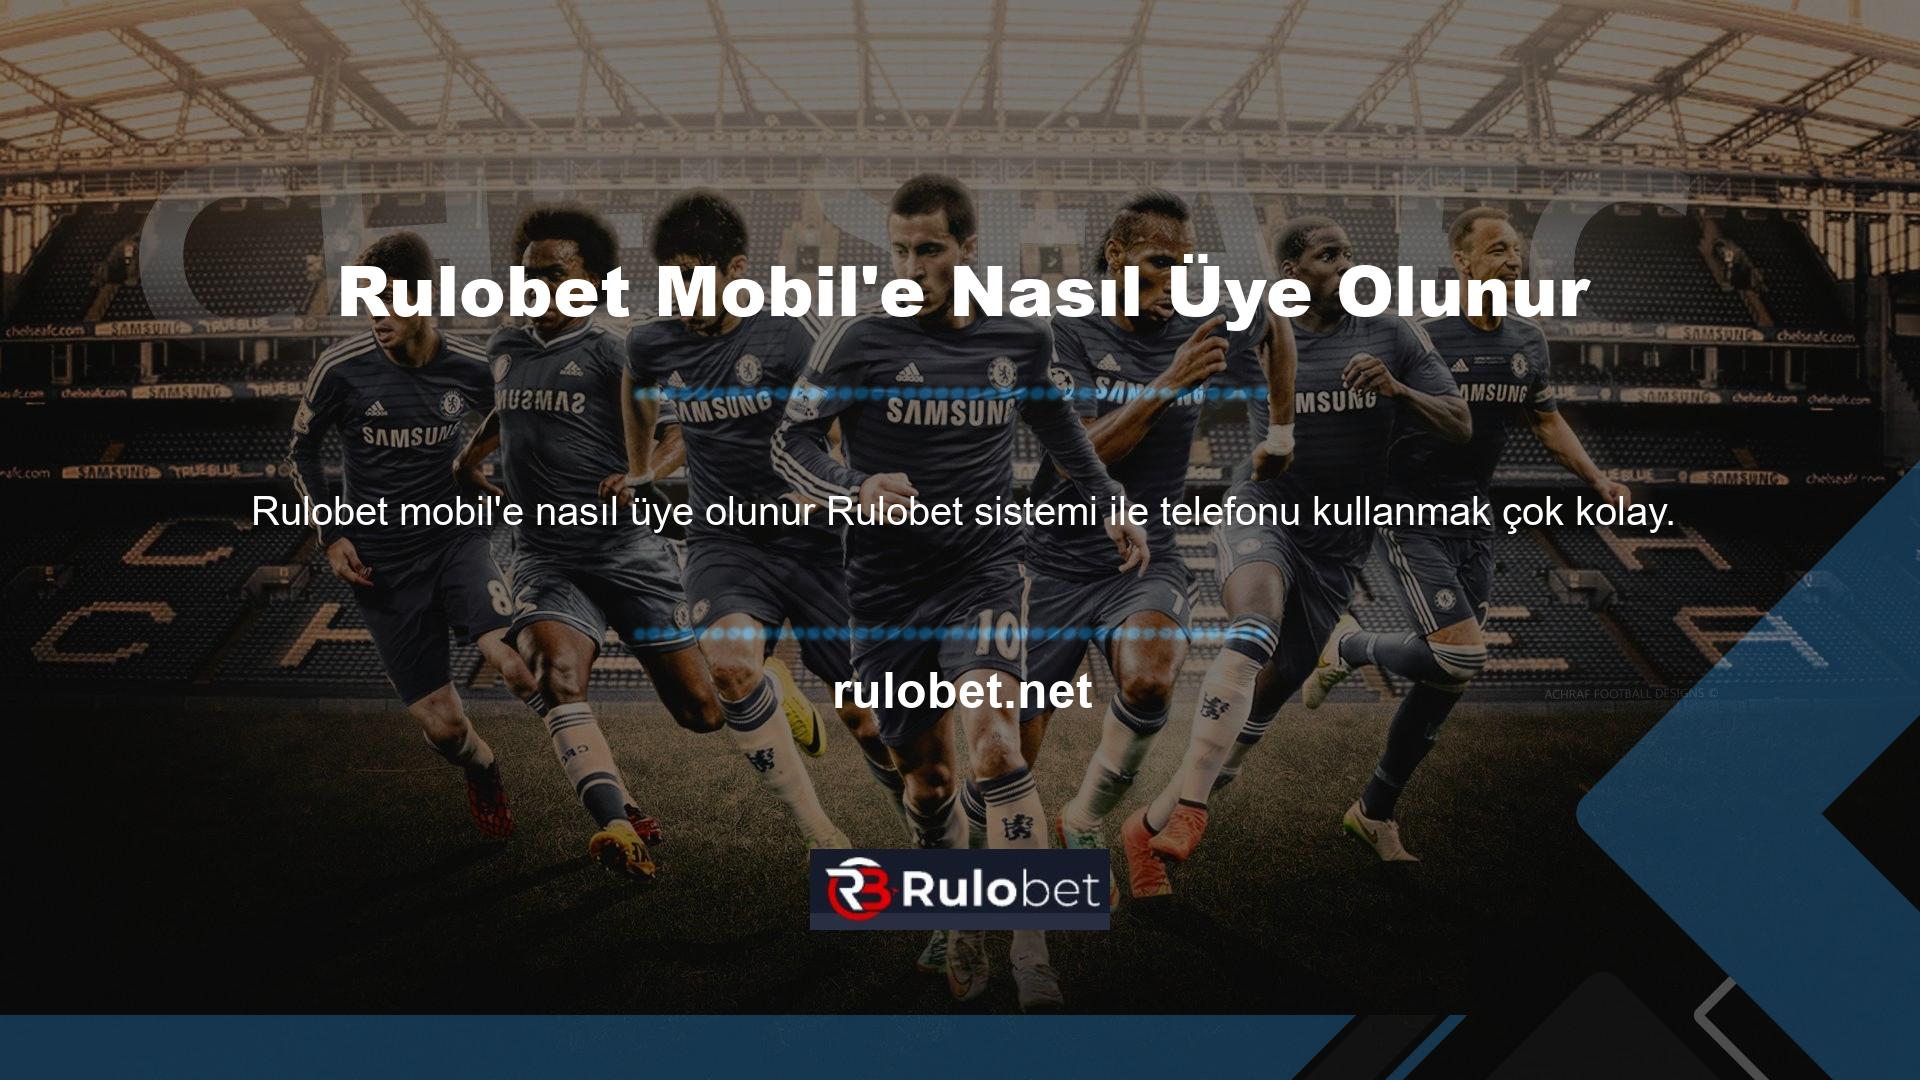 Rulobet mobil kayıt işlemi cep telefonunuzdan yapılabilmektedir